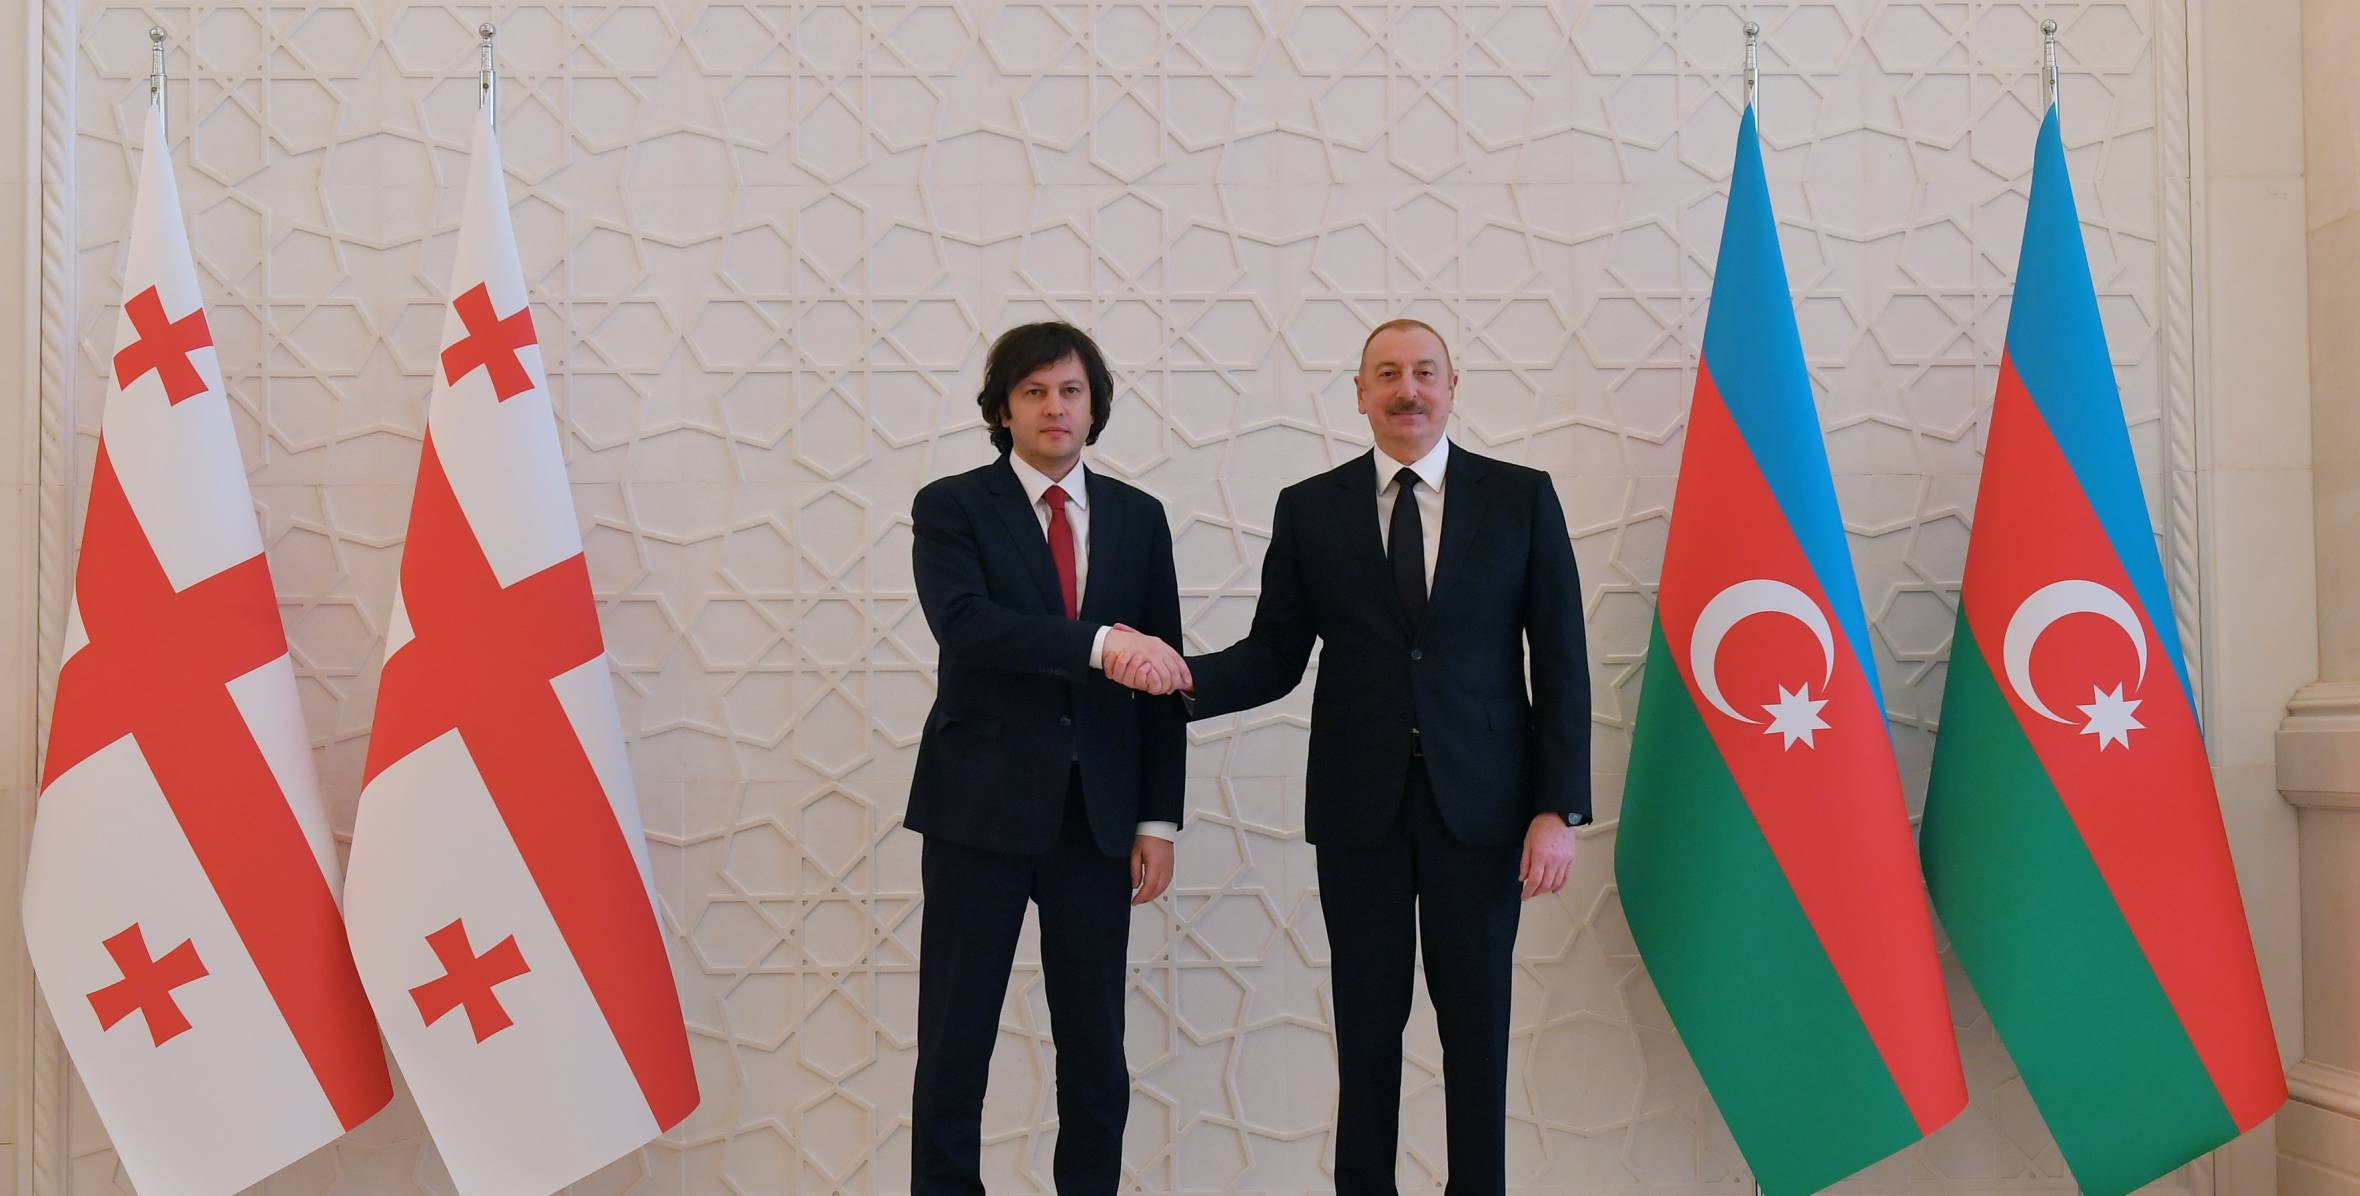 Состоялась встреча Президента Ильхама Алиева с премьер-министром Грузии Ираклием Кобахидзе один на один